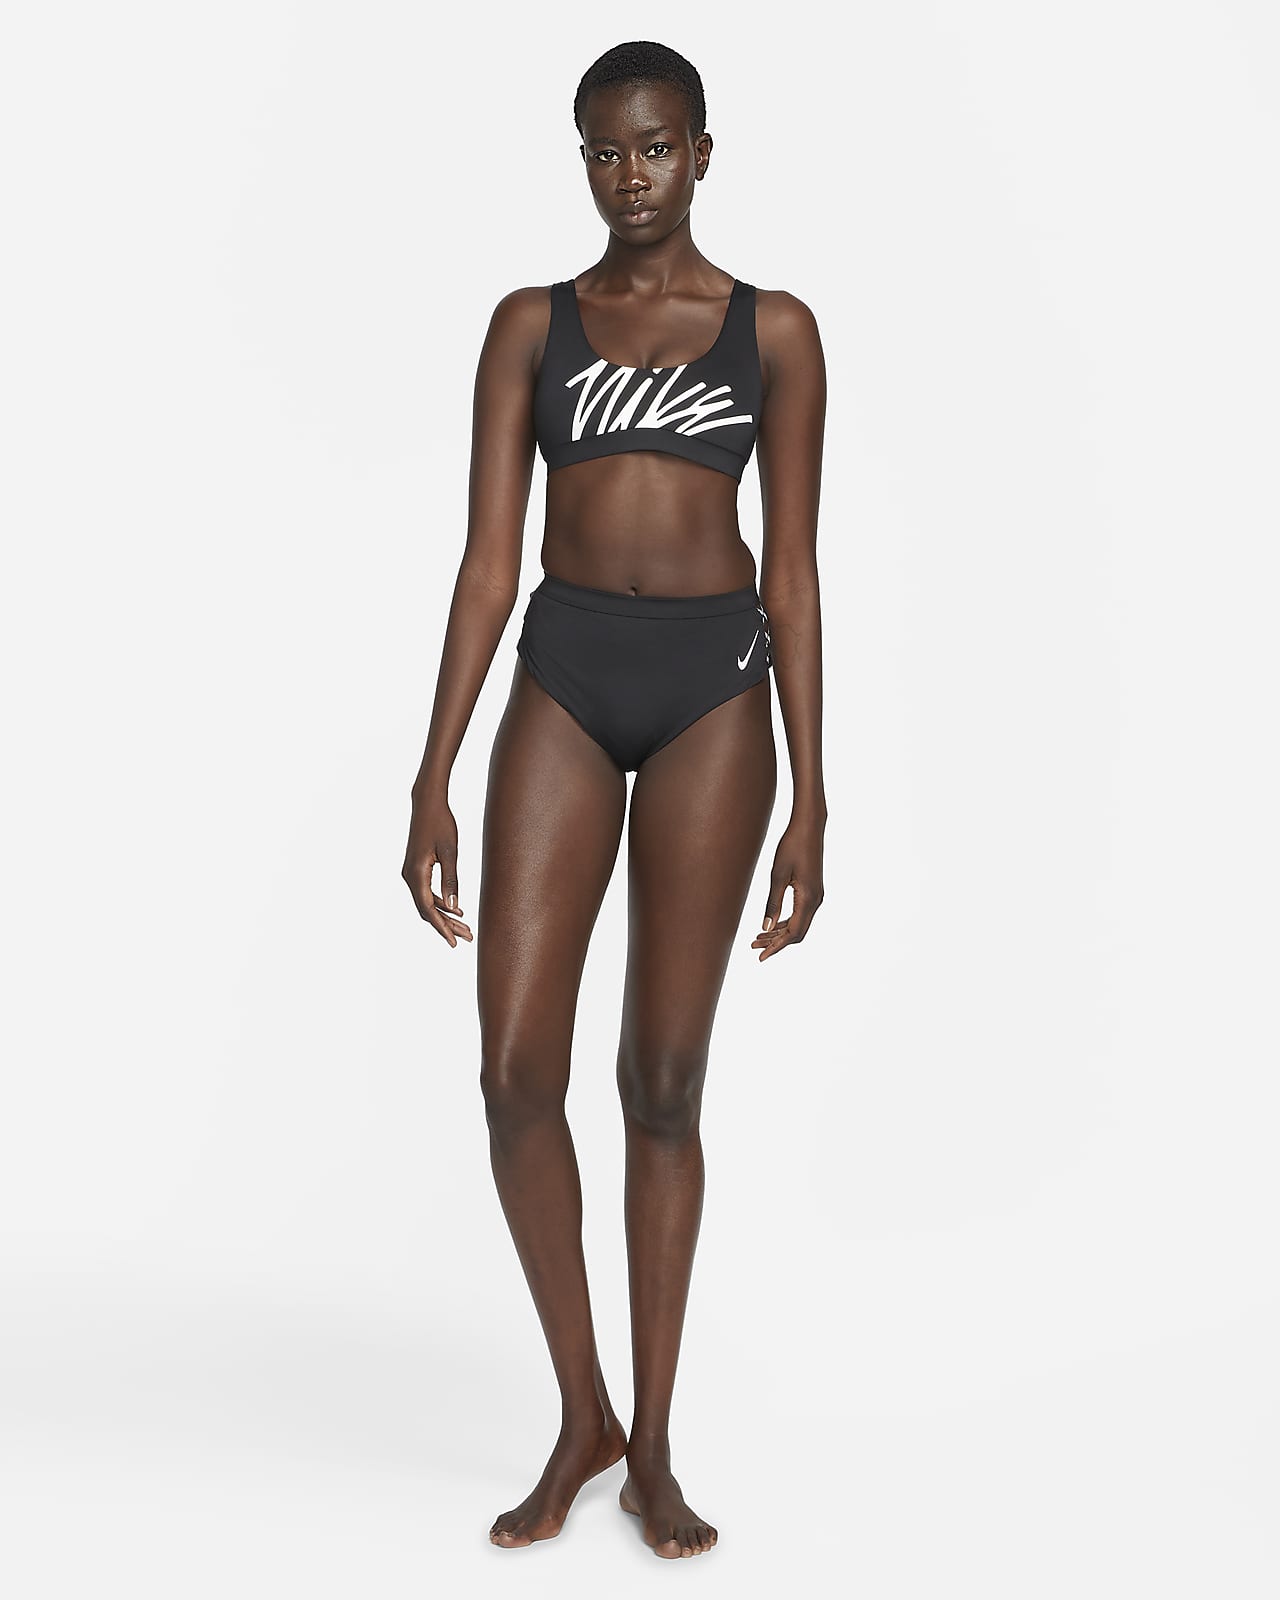 Onderzoek Veel gevaarlijke situaties benzine Nike Multi Logo Women's Scoop Neck Bikini Top. Nike.com